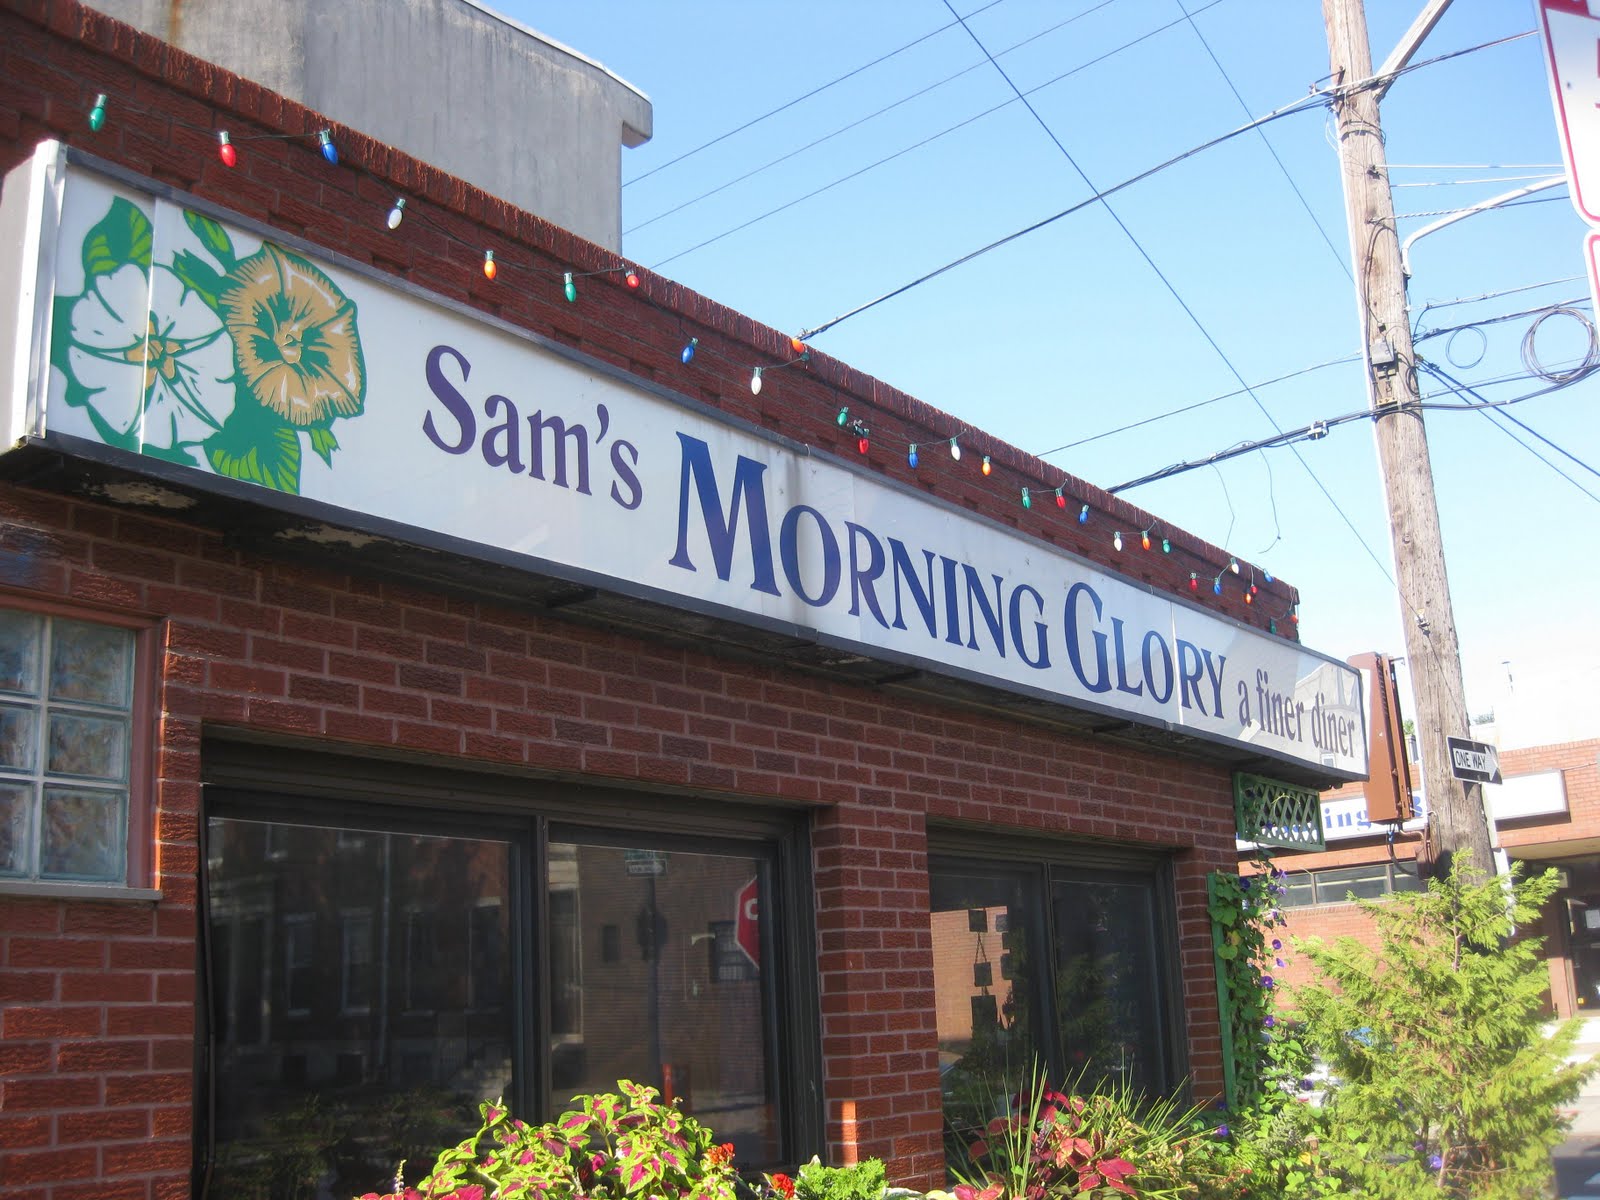 Sam's Morning Glory Diner